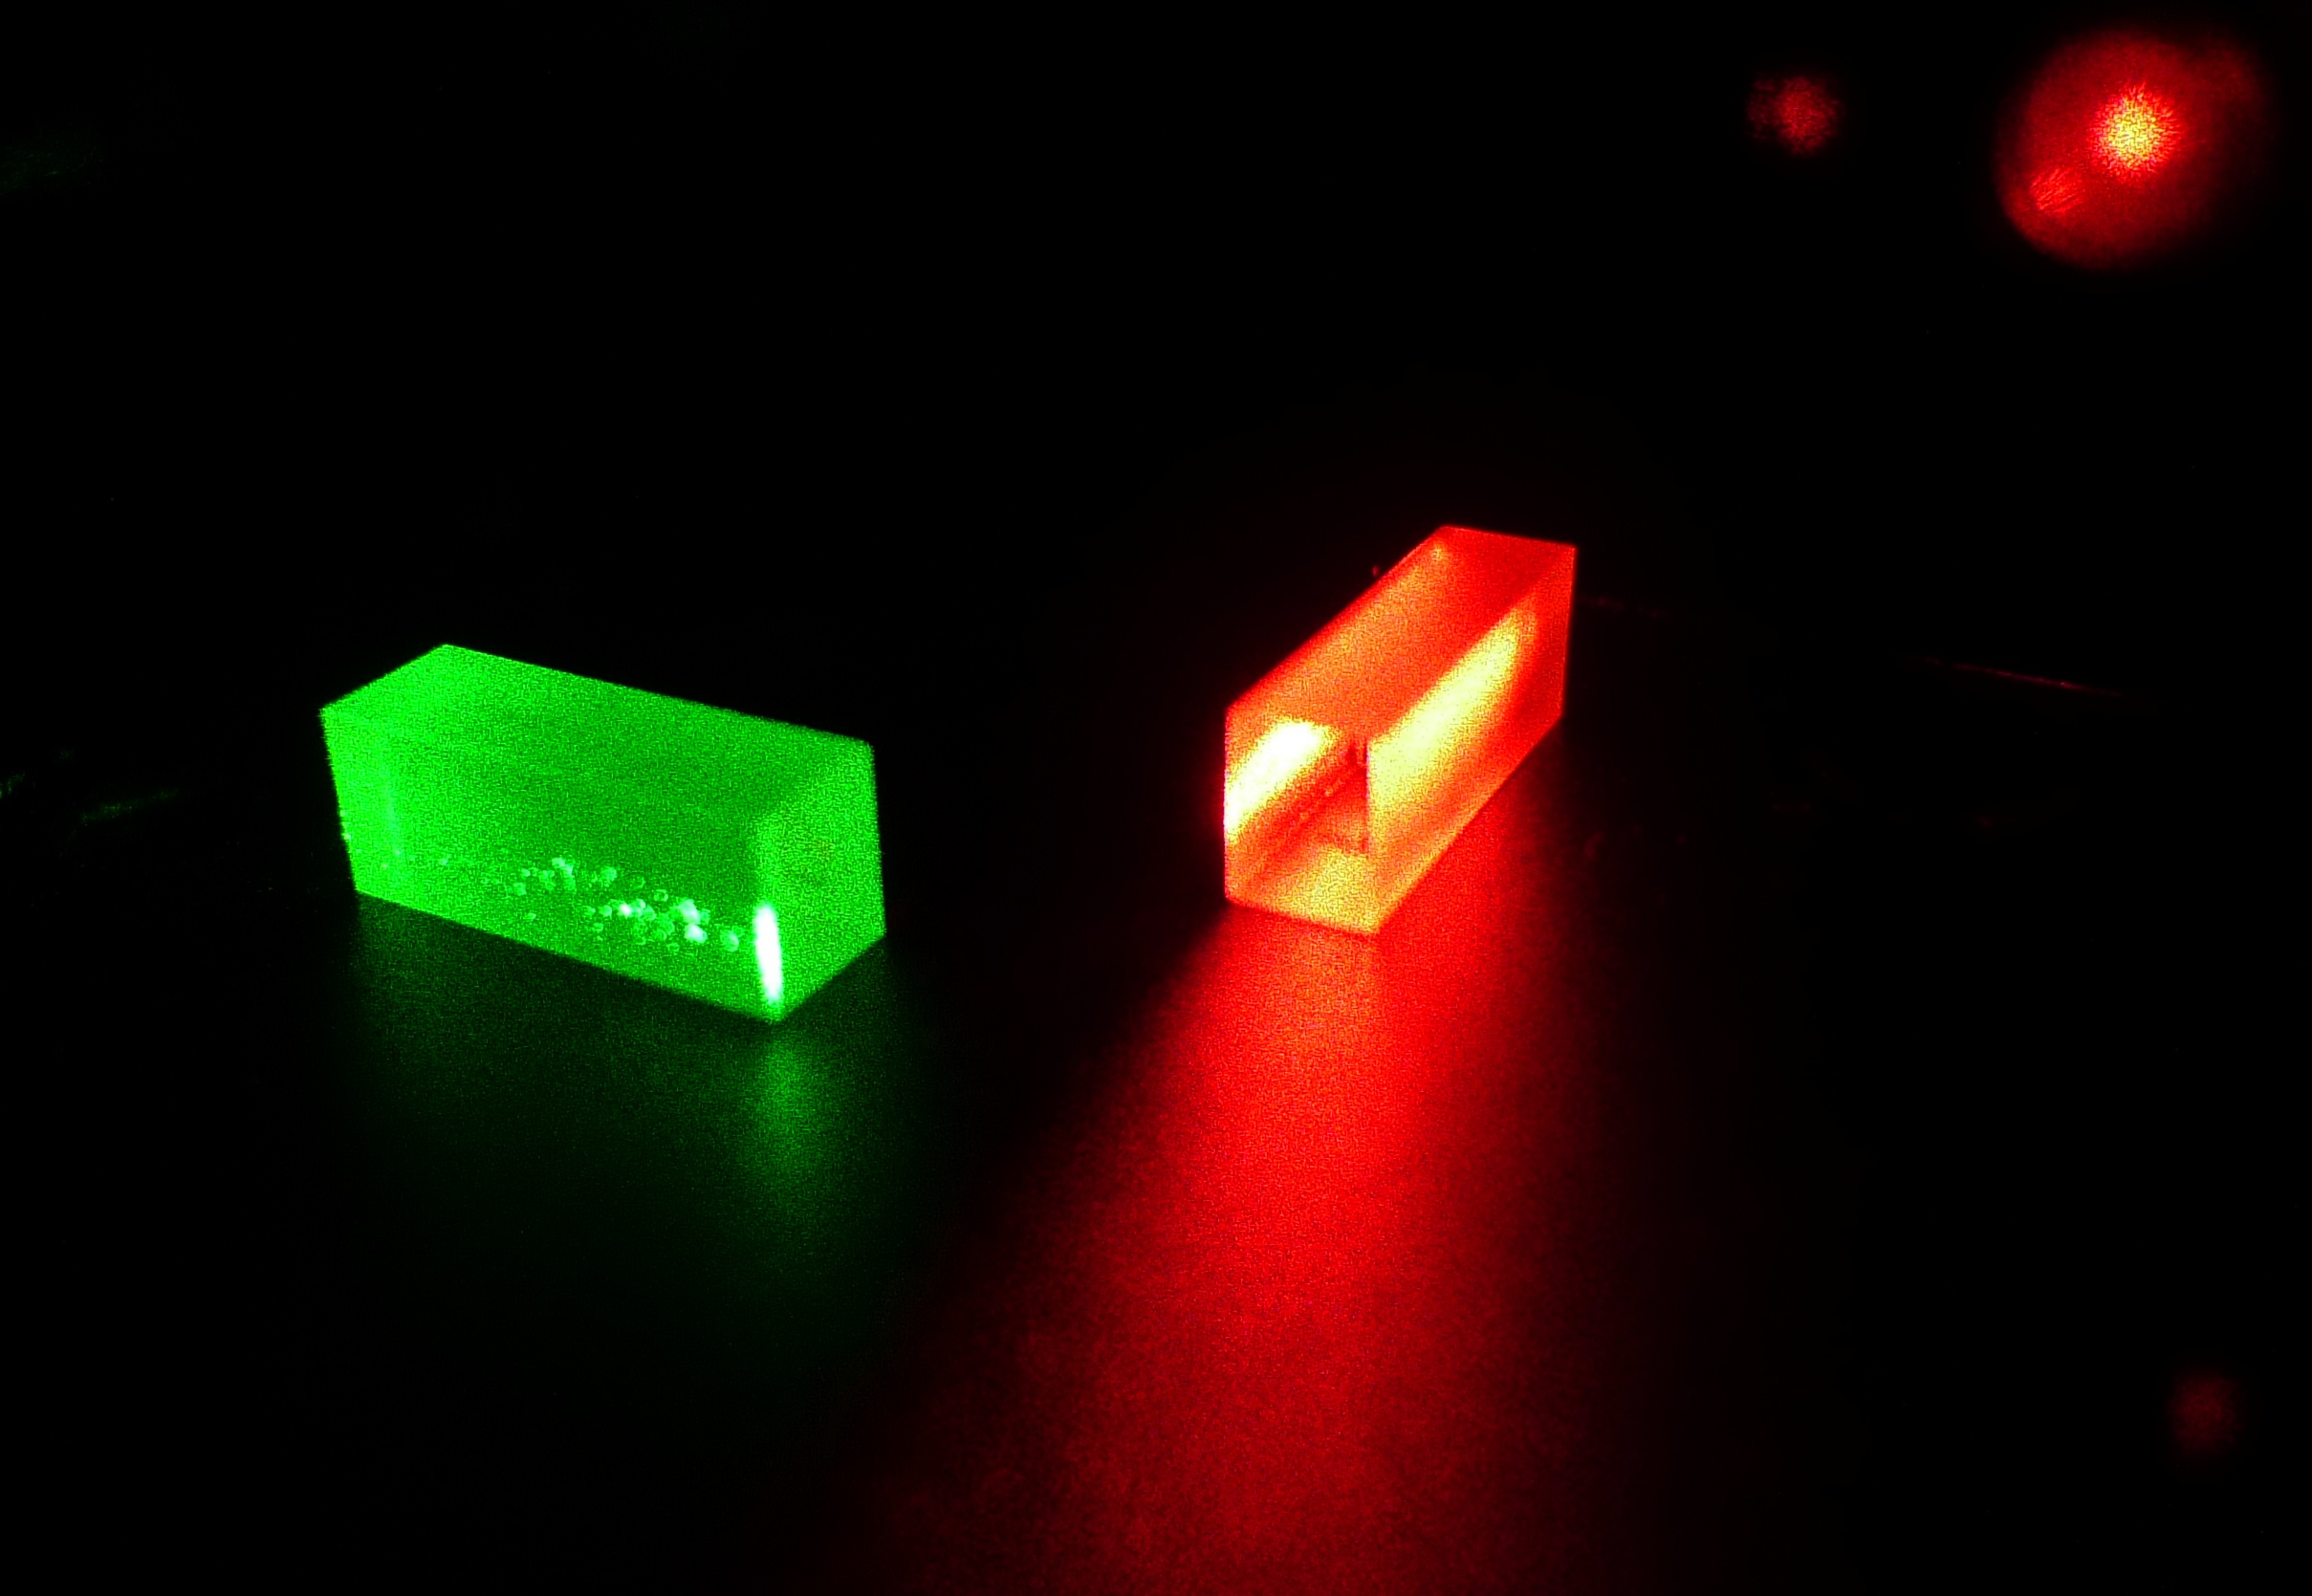 Cristales que contienen la información fotónica tras el teletransporte. Fuente: Grupo de Física Aplicada/UniGe.